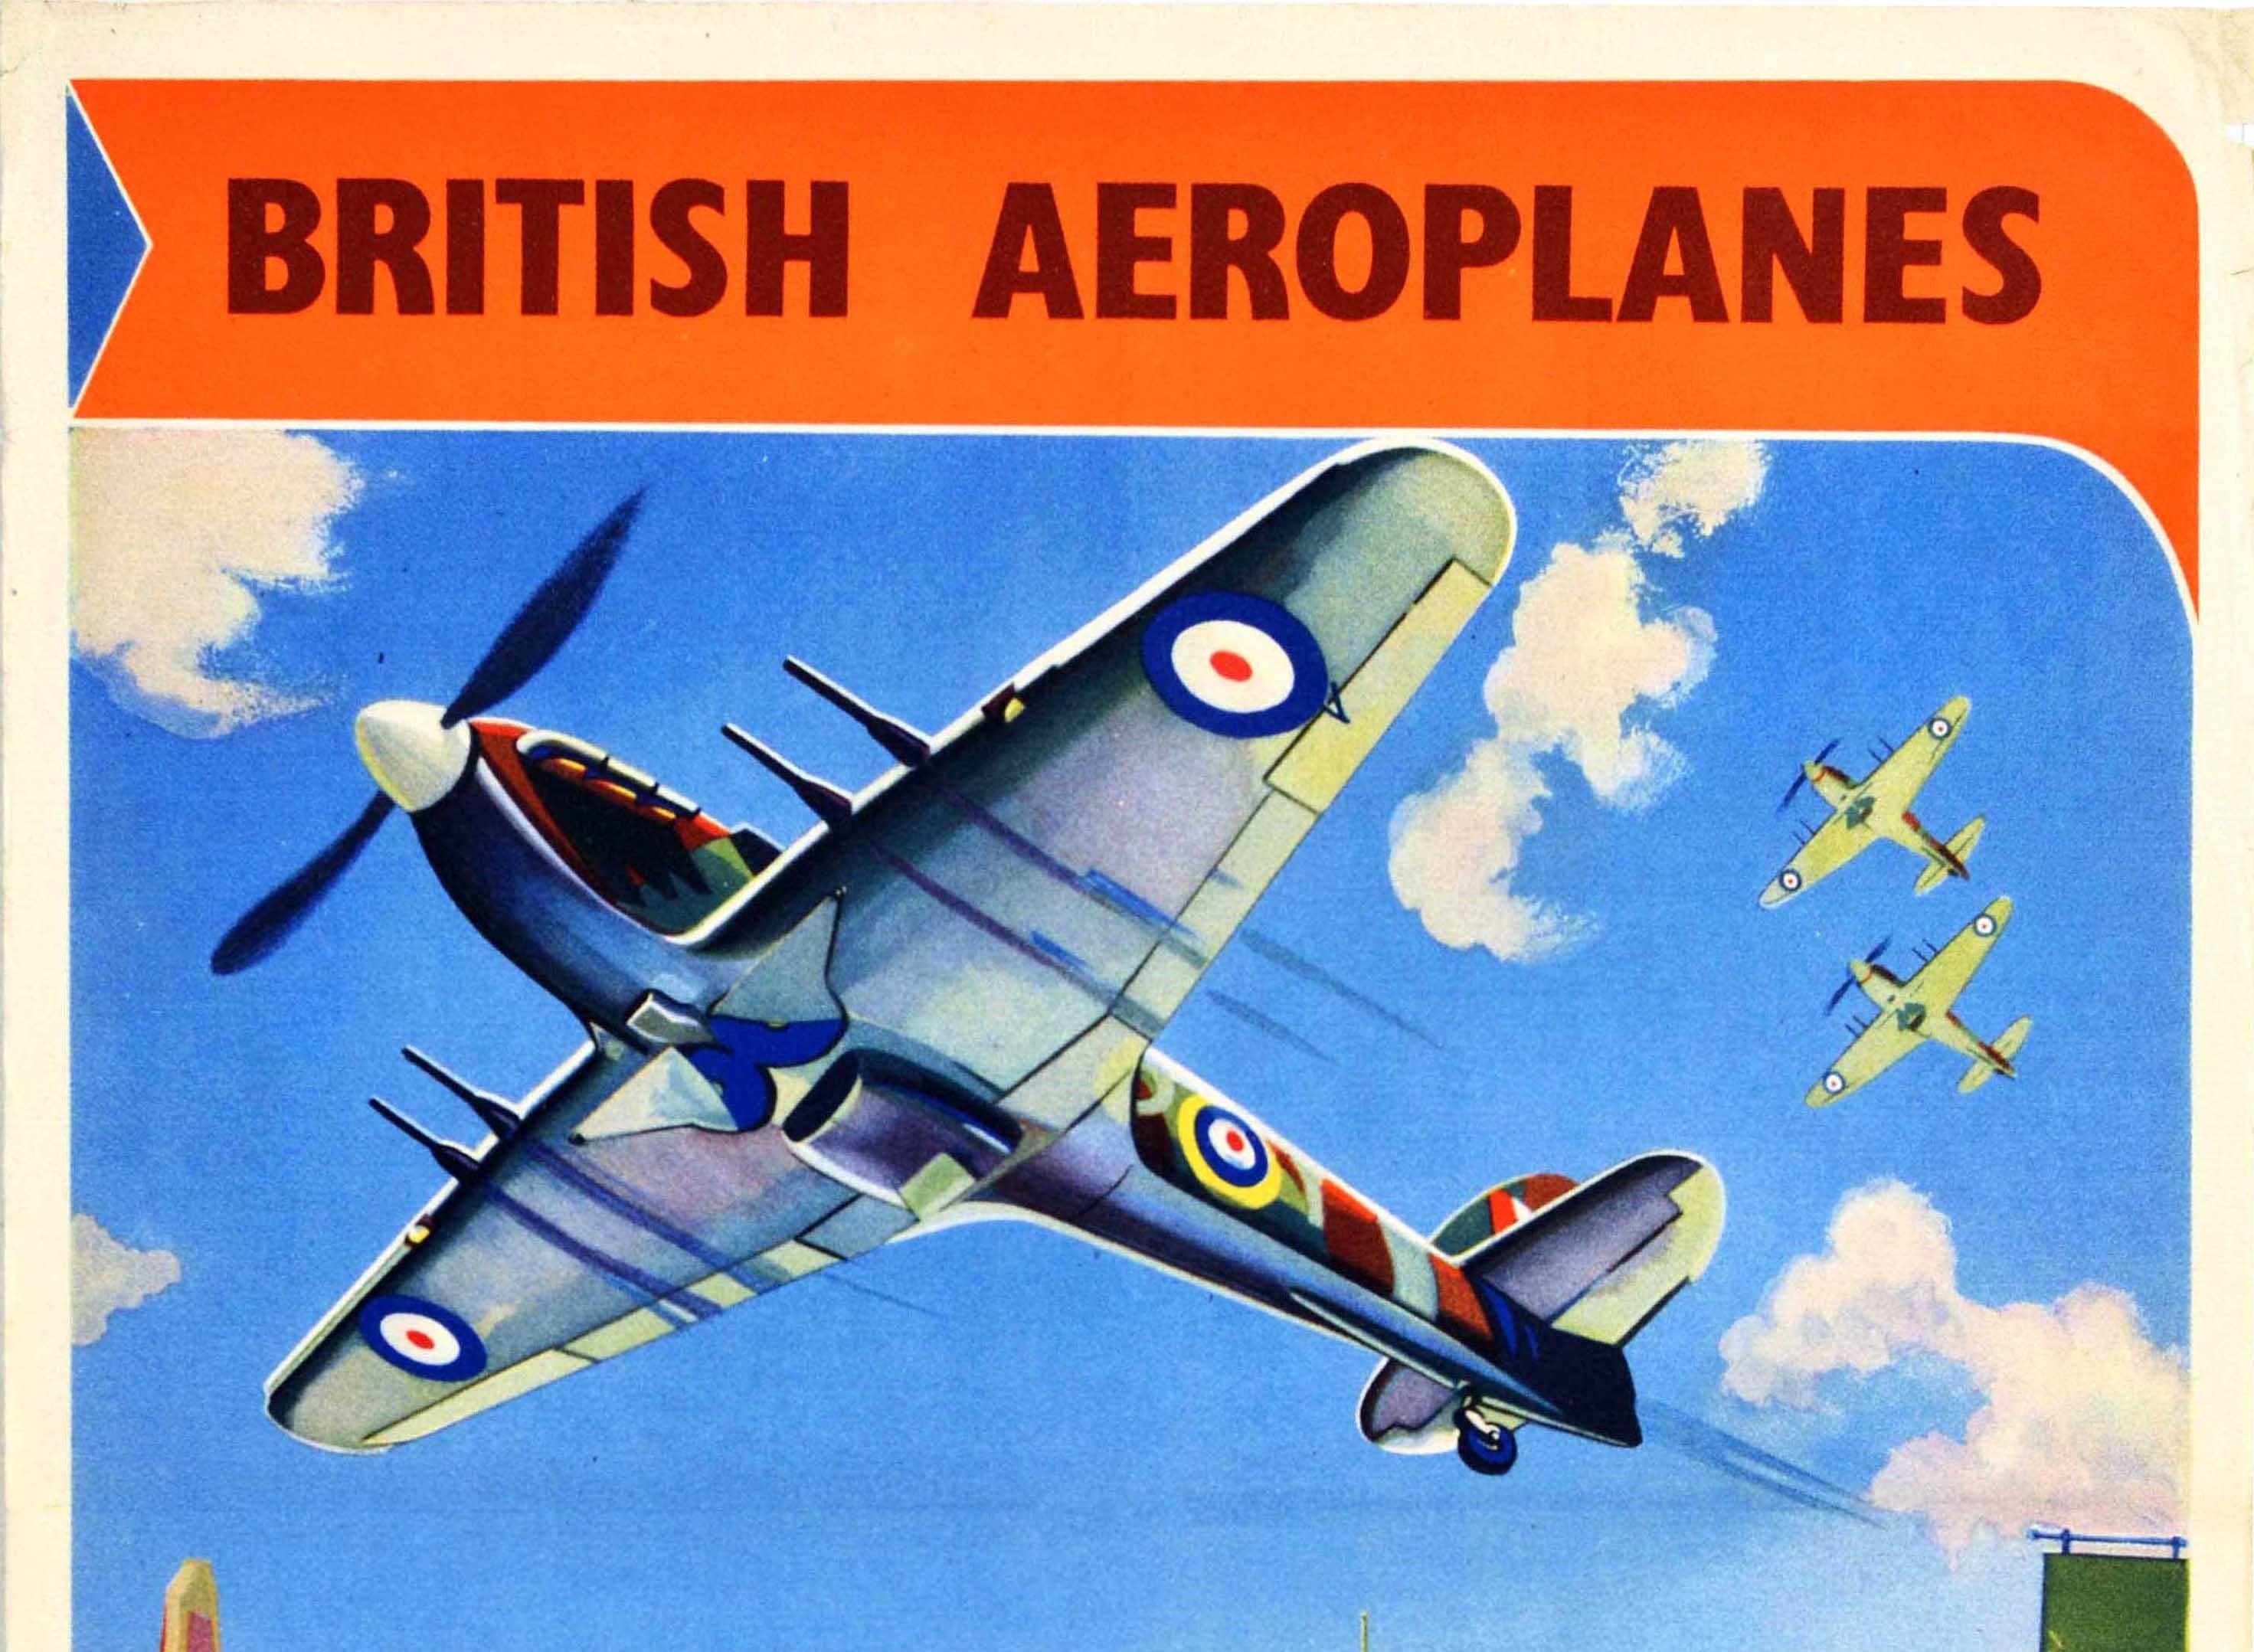 Originales Propagandaplakat des Zweiten Weltkriegs - British Aeroplanes Guard African Skies - mit einem farbenfrohen Design, das ein Royal Air Force RAF Spitfire Flugzeug zeigt, das im Tiefflug über eine belebte Straße in Afrika fliegt, mit einem